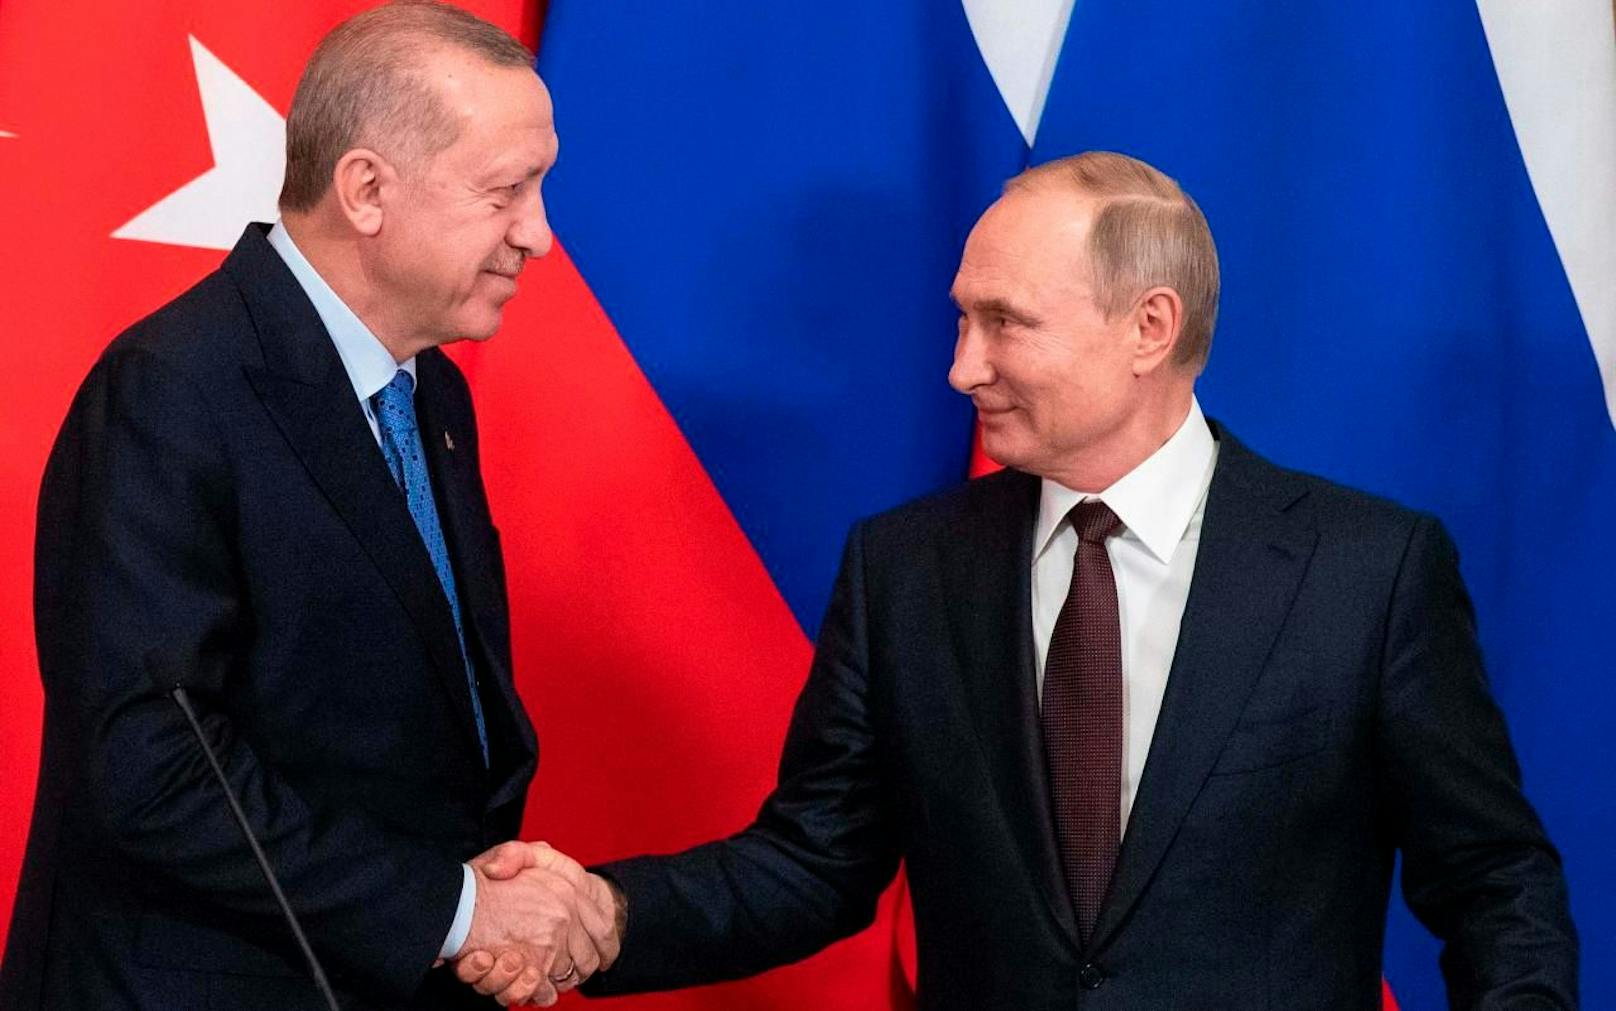 Halten sich nicht an die Corona-Hygienevorschriften: Putin und Erdogan beim Händeschütteln